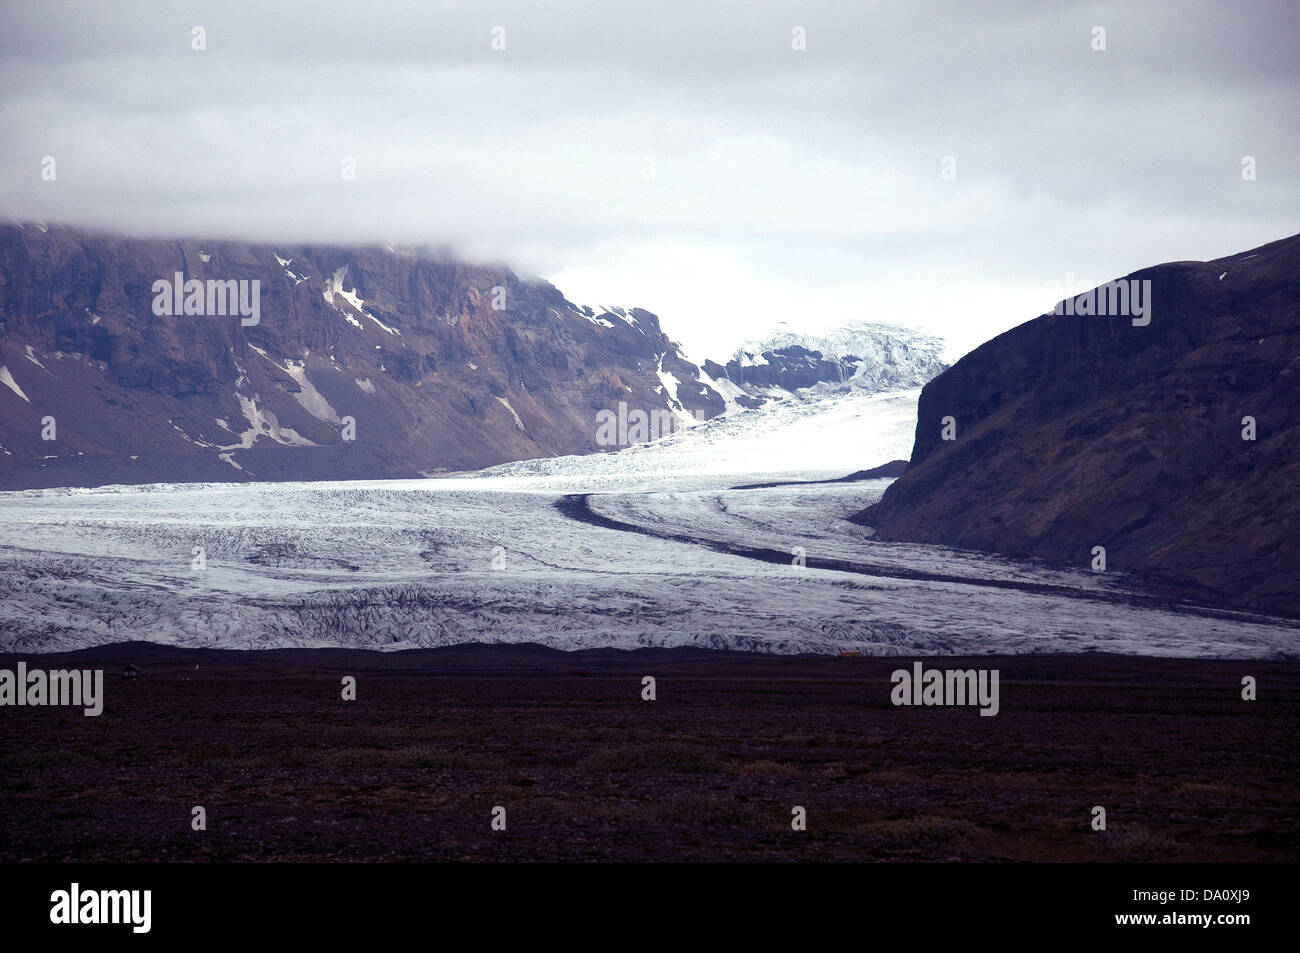 La côte sud de l'Islande ravagée par les forces volcaniques, changements de glaciers et de séismes -- Cette zone est Skeidarasandur redoutable Banque D'Images